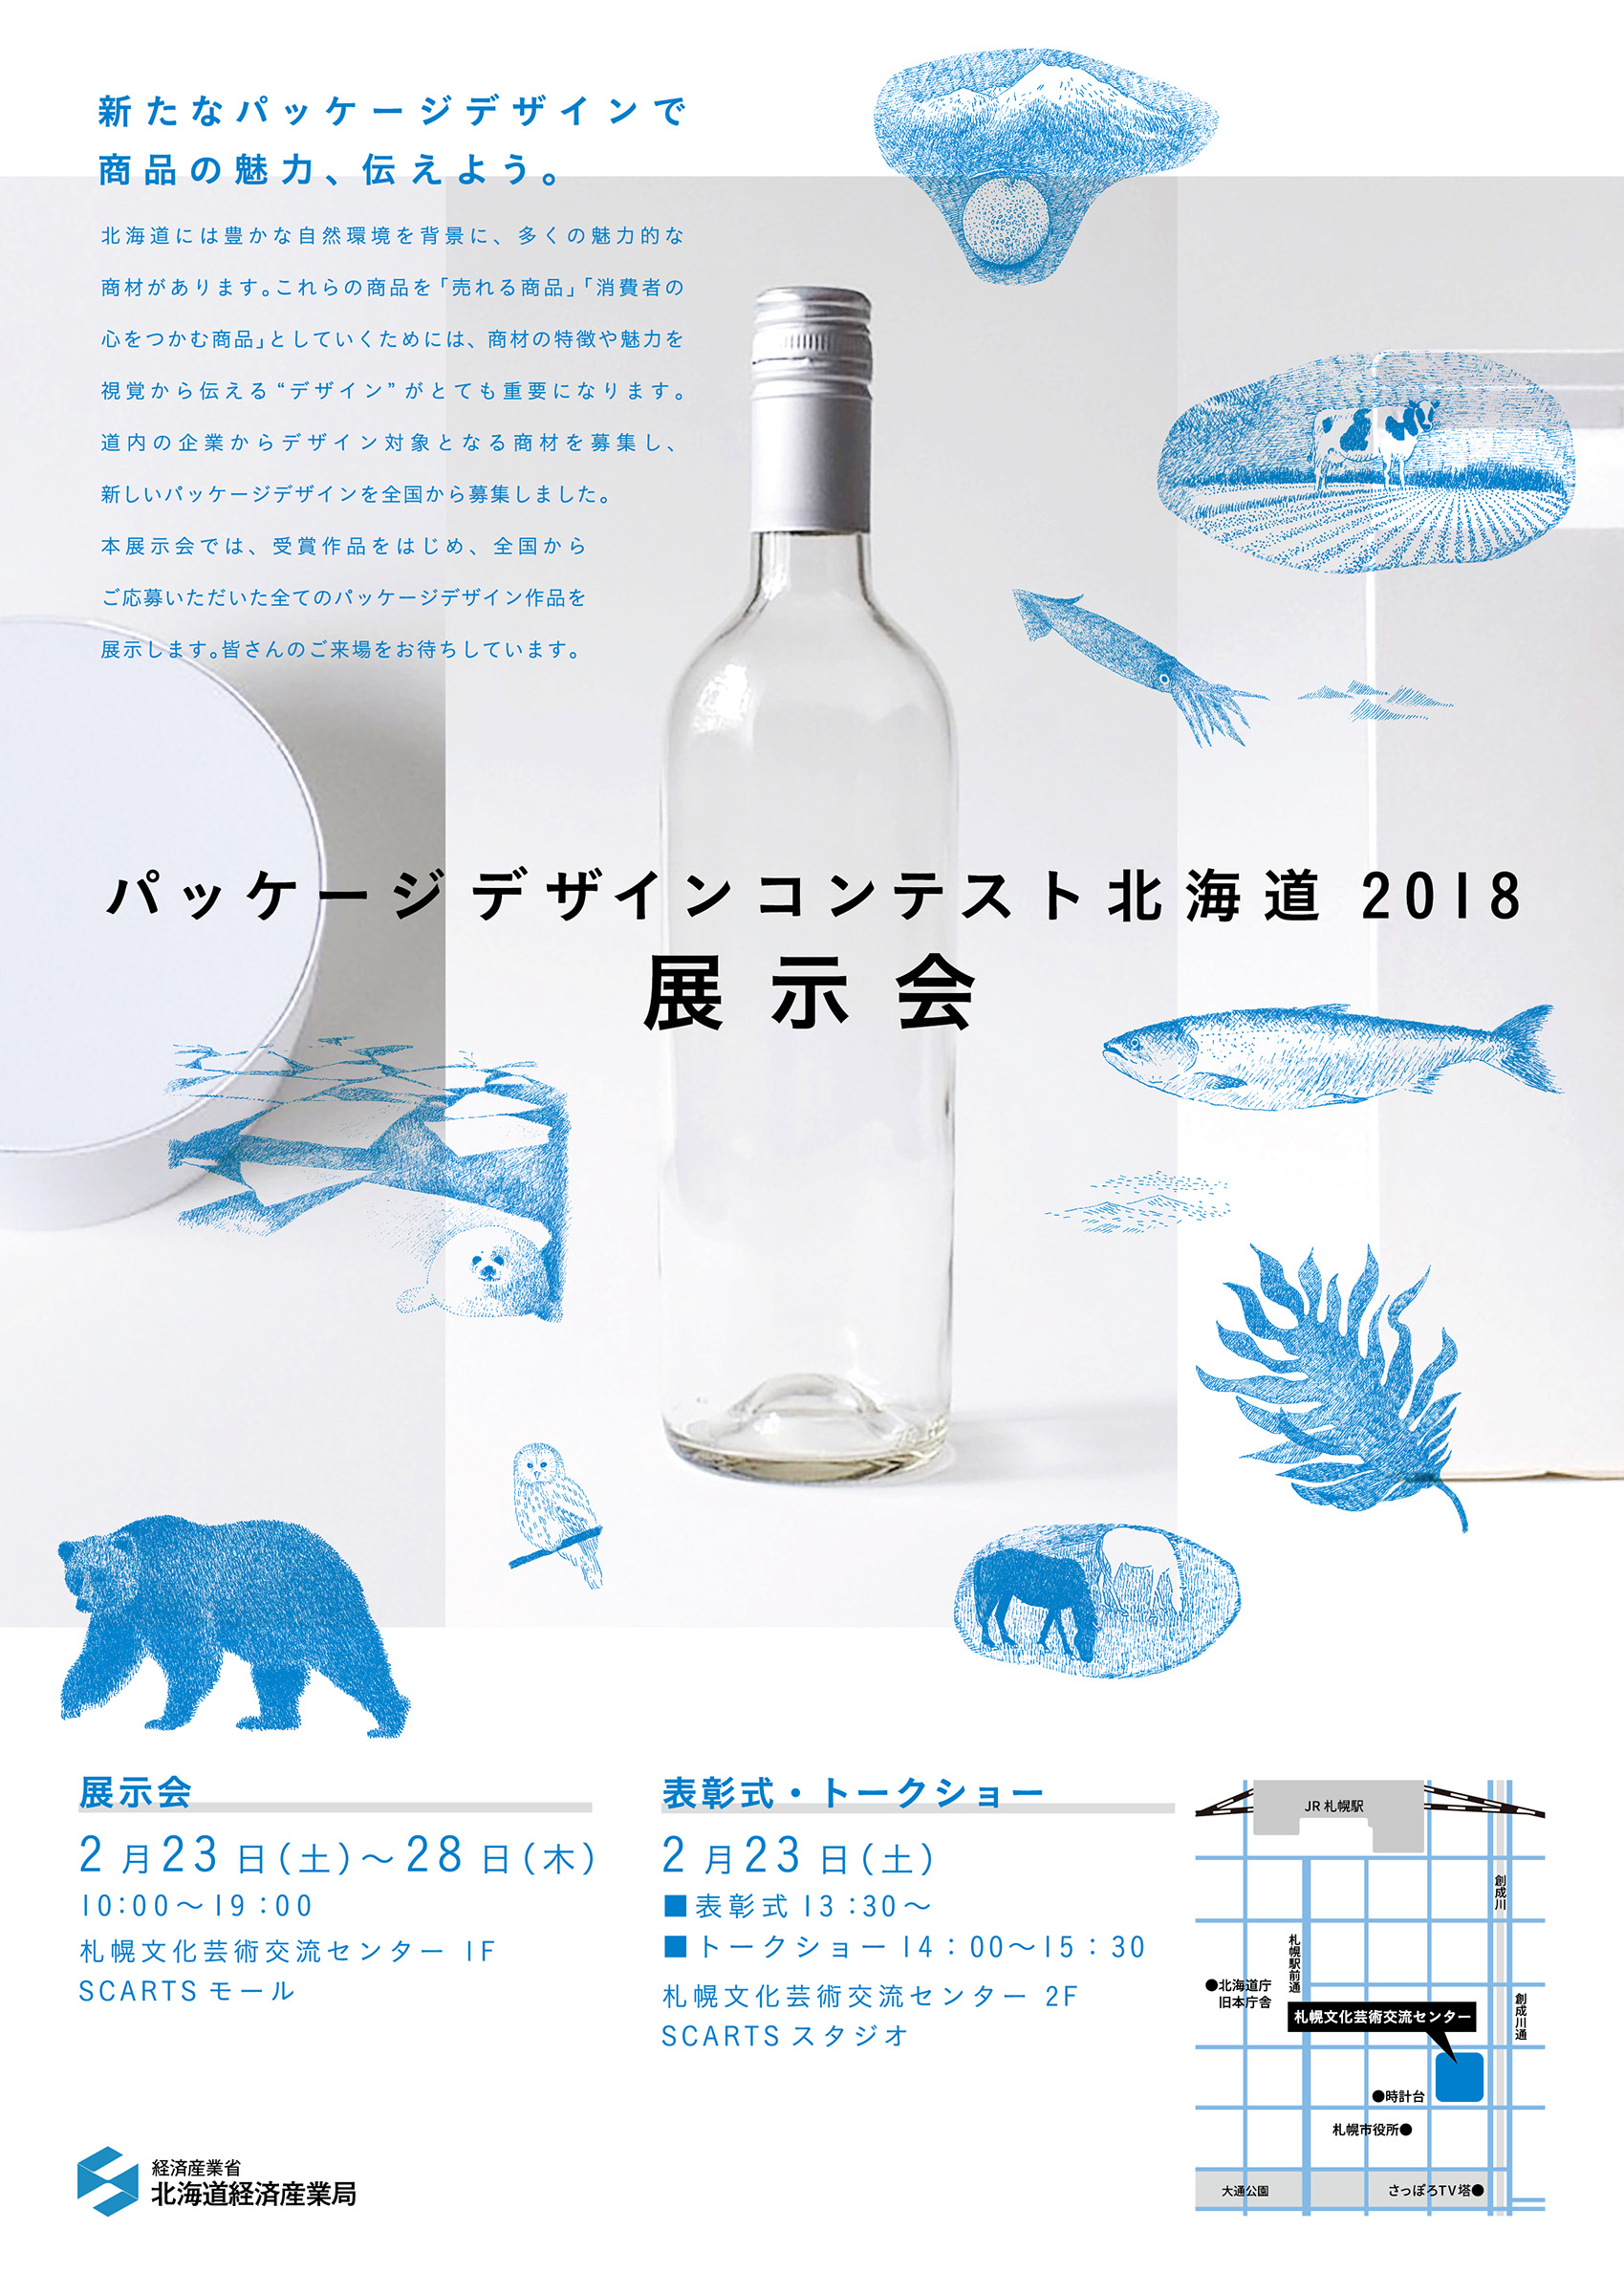 パッケージデザインコンテスト北海道2018展示会イメージ1枚目